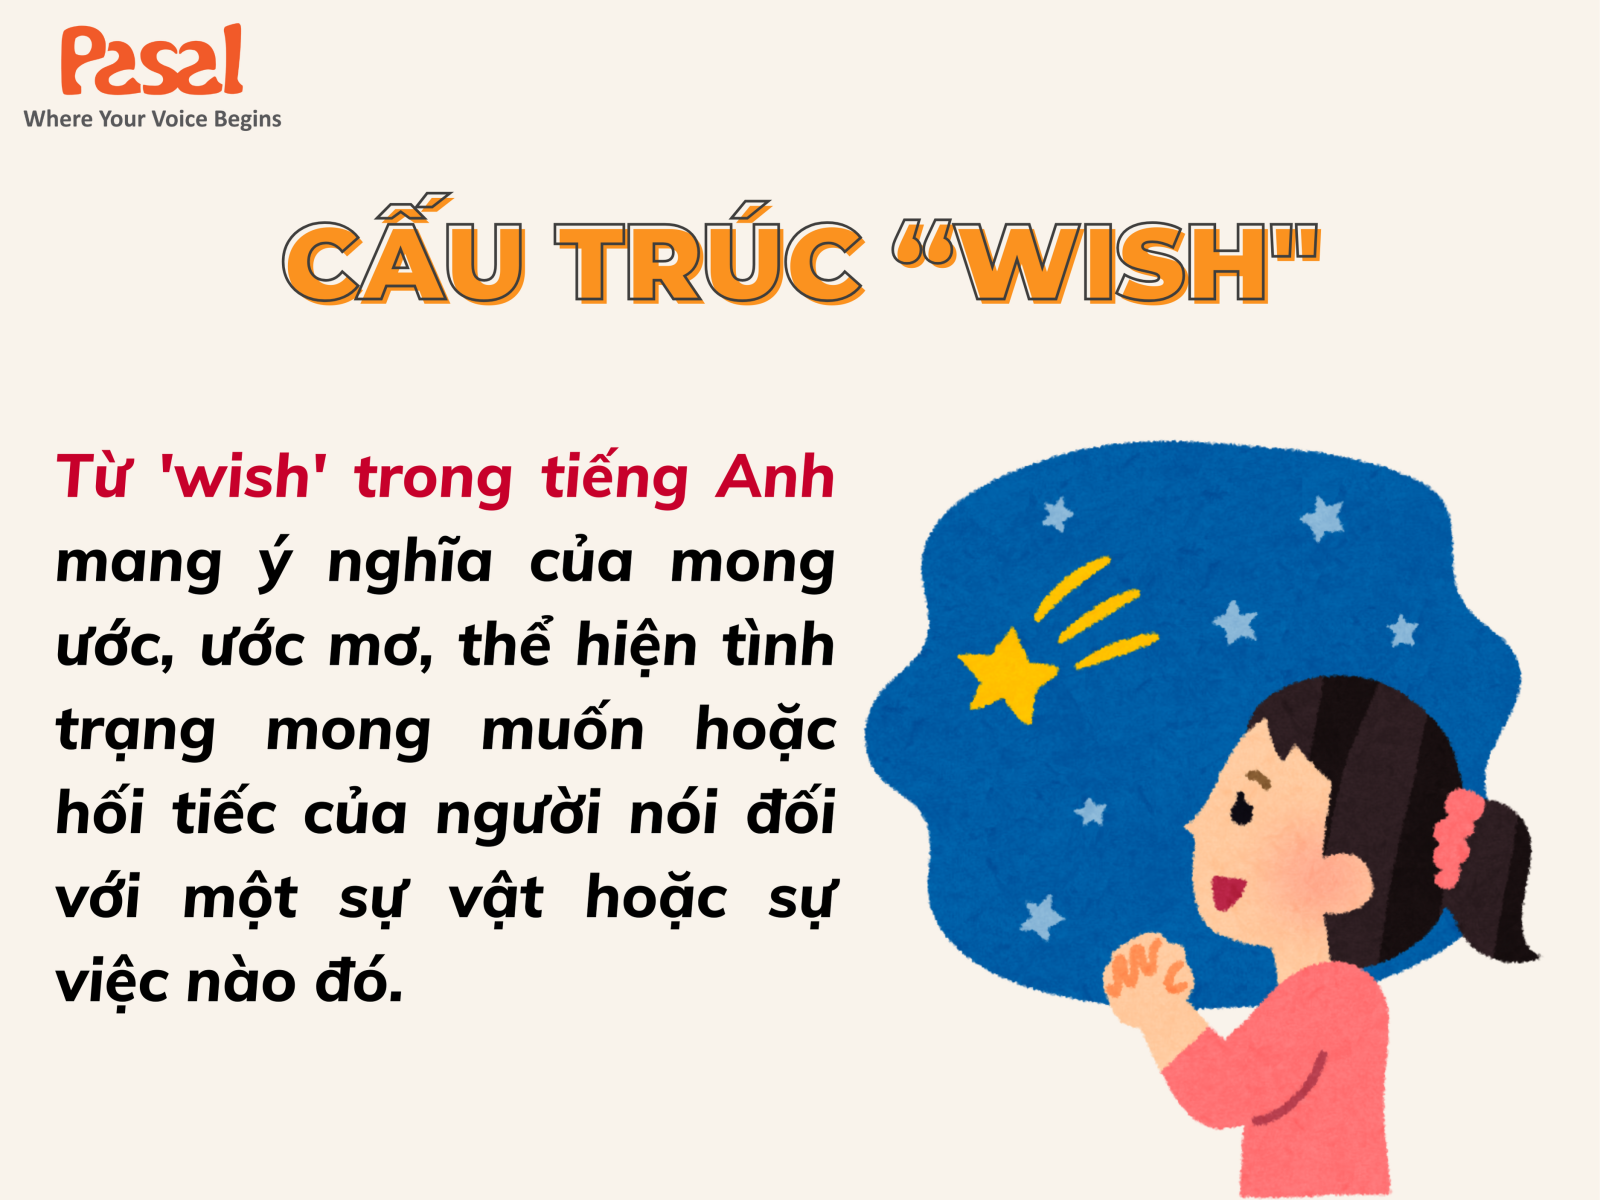 Wish trong tiếng Anh là gì?